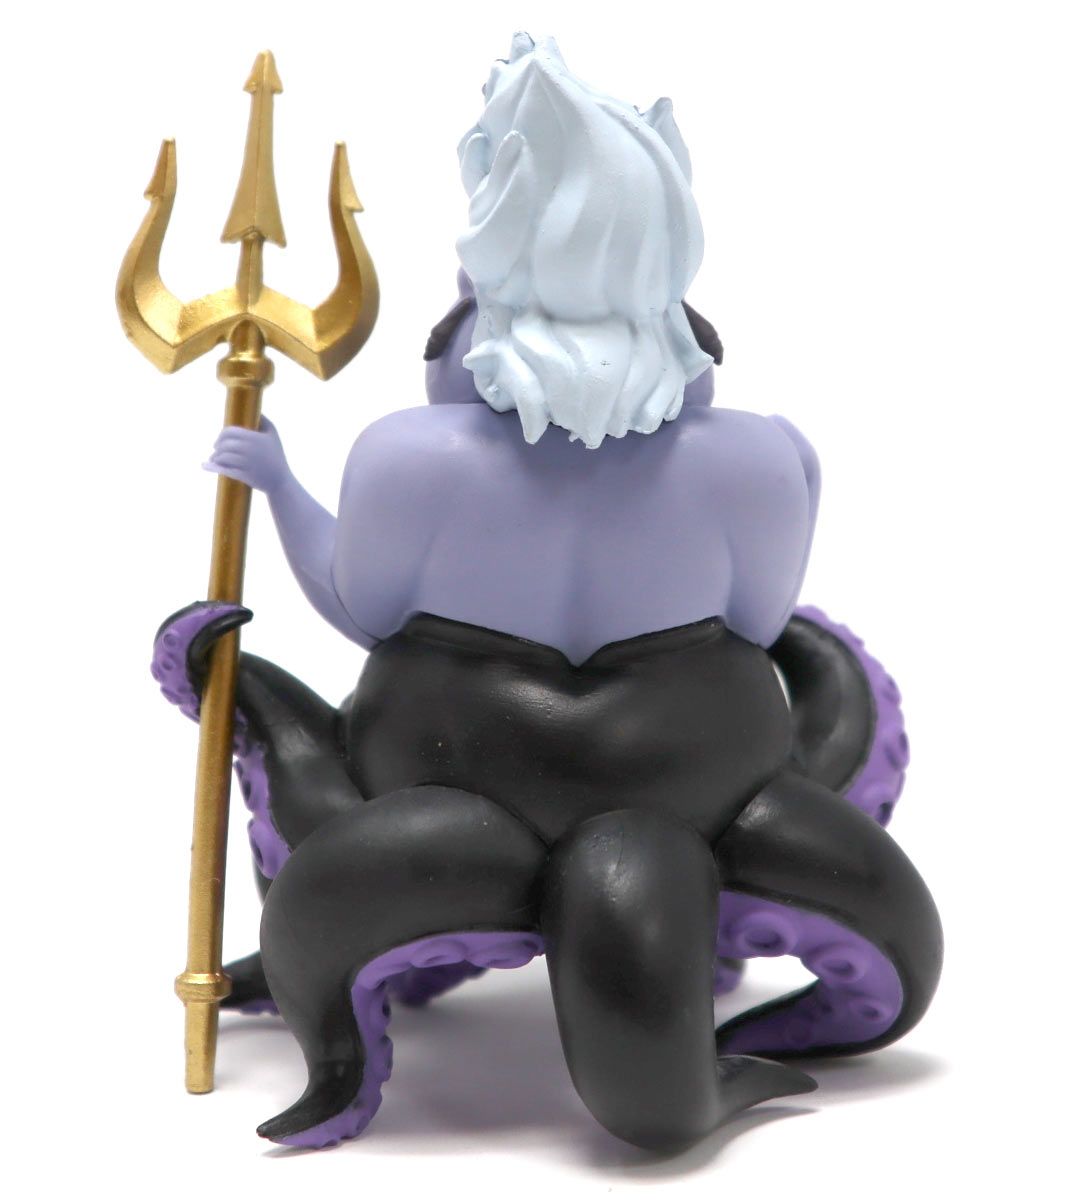 Mini Egg Attack Series - Ursula (Disney Villains)